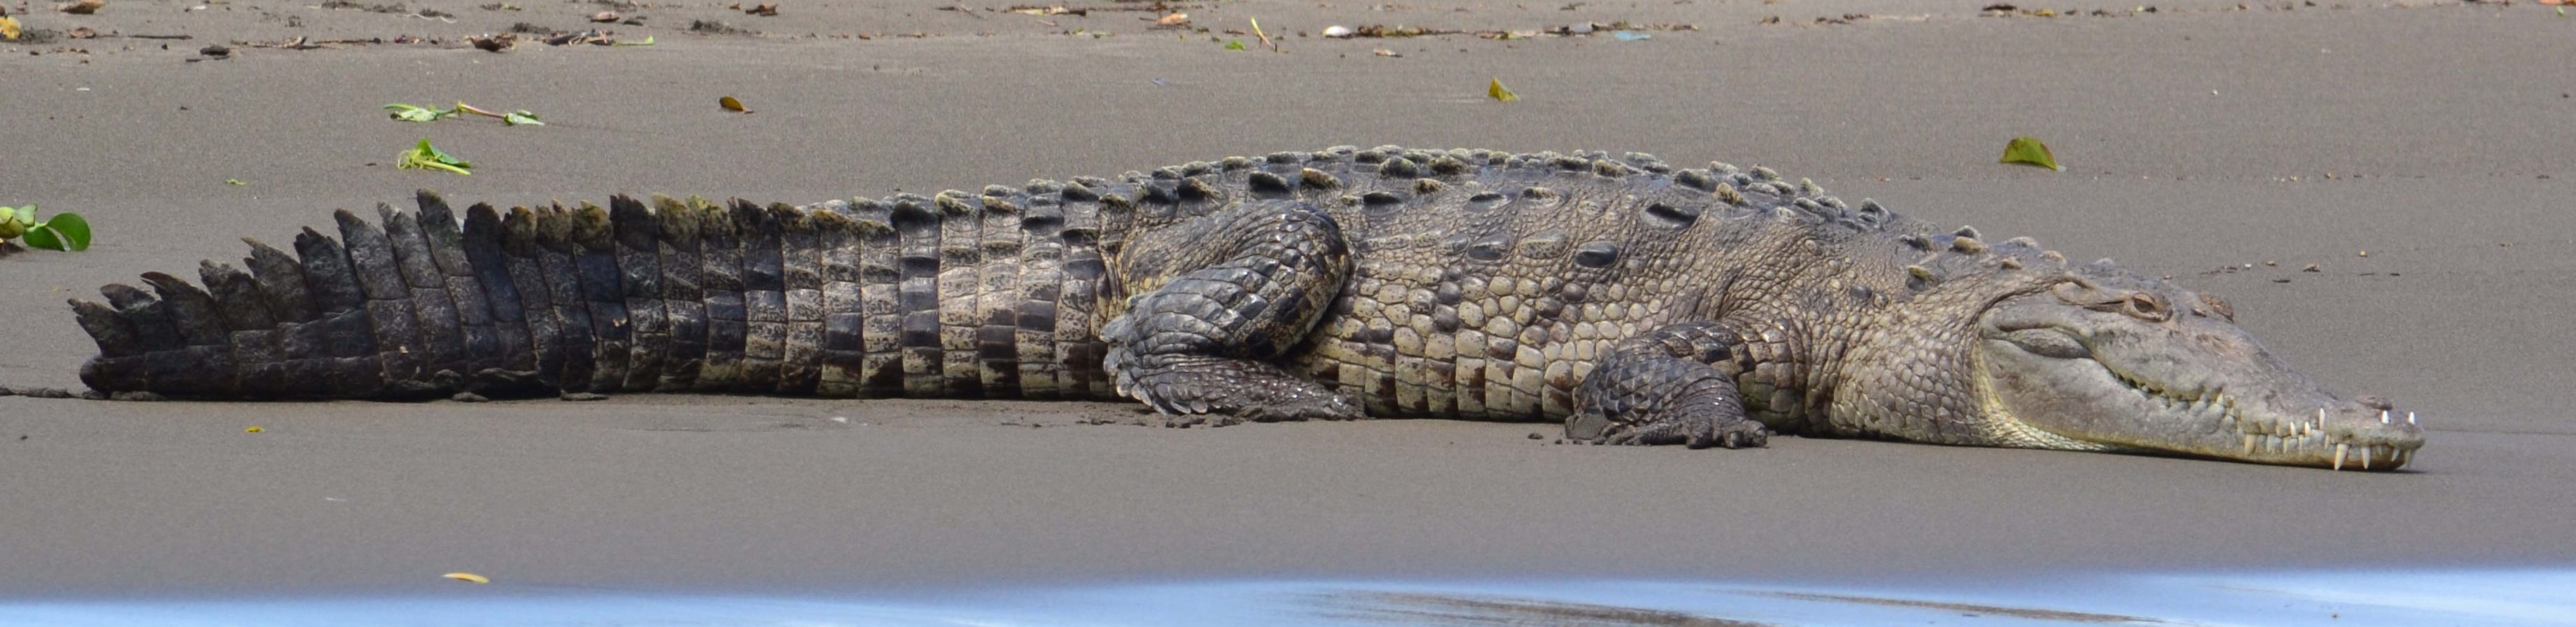 crocodile parc national de palo verde costa rica voyage agence de voyage